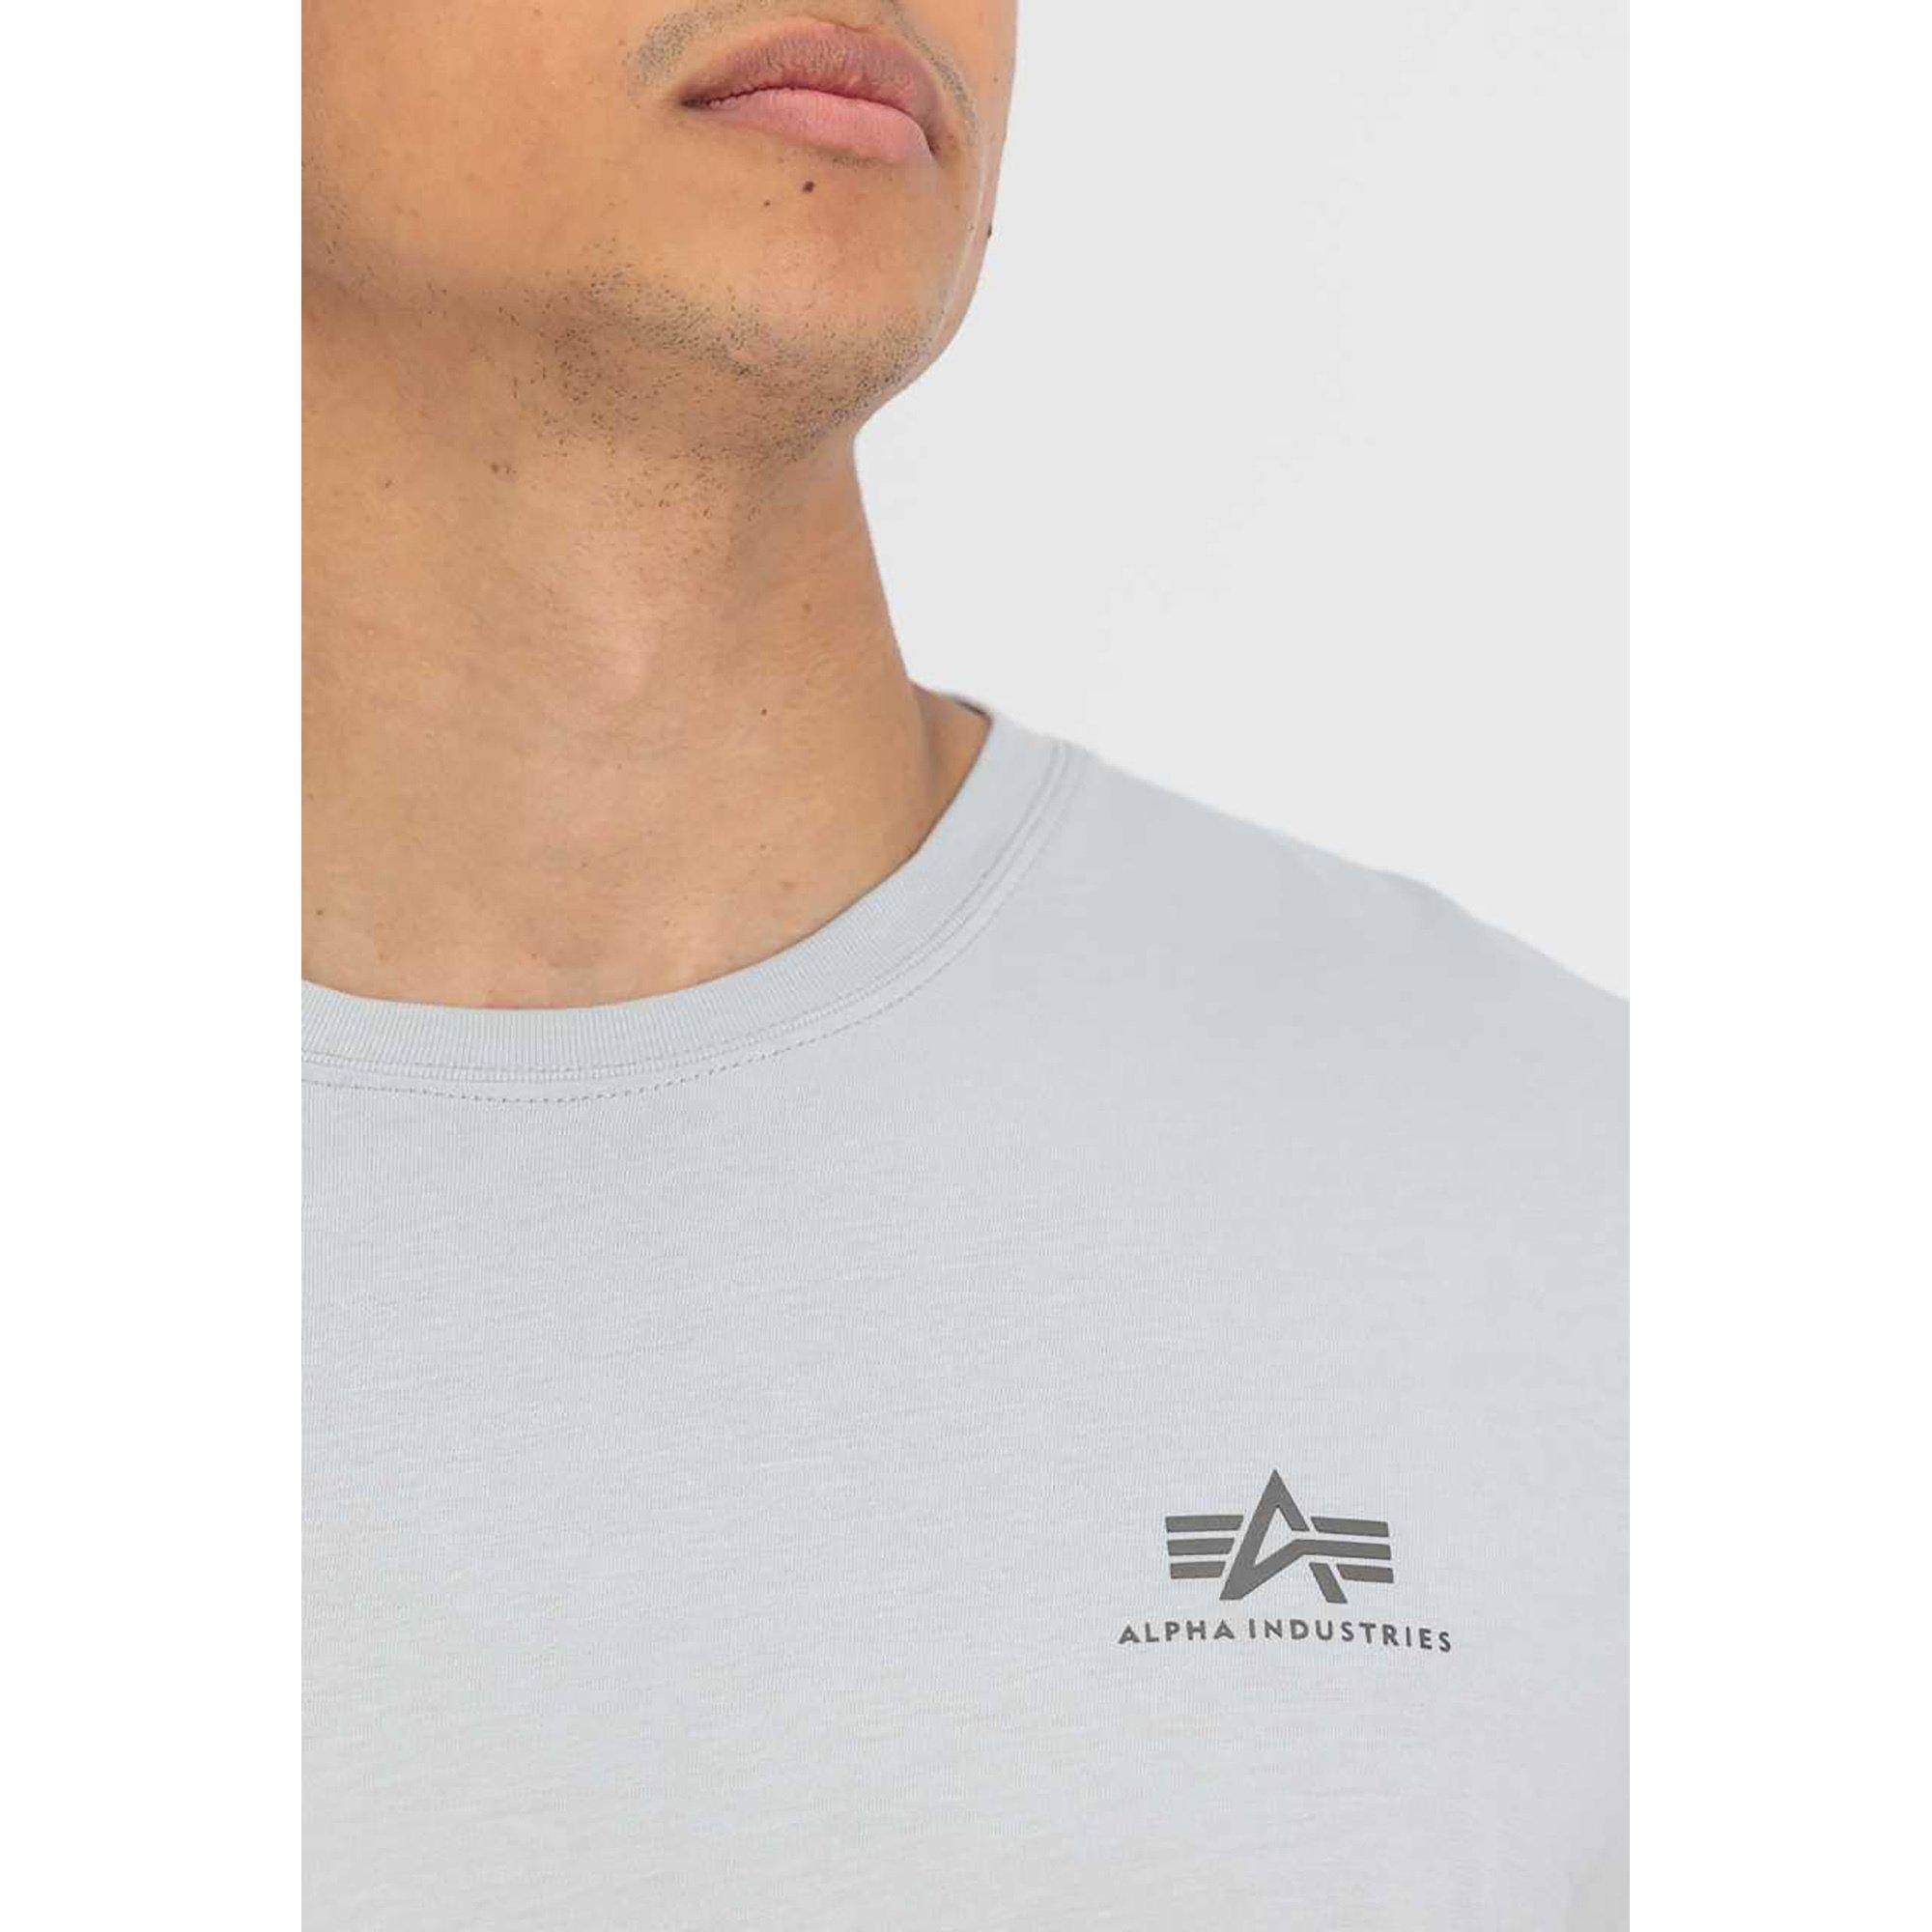 Alpha Industries Air Force T T-Shirt 